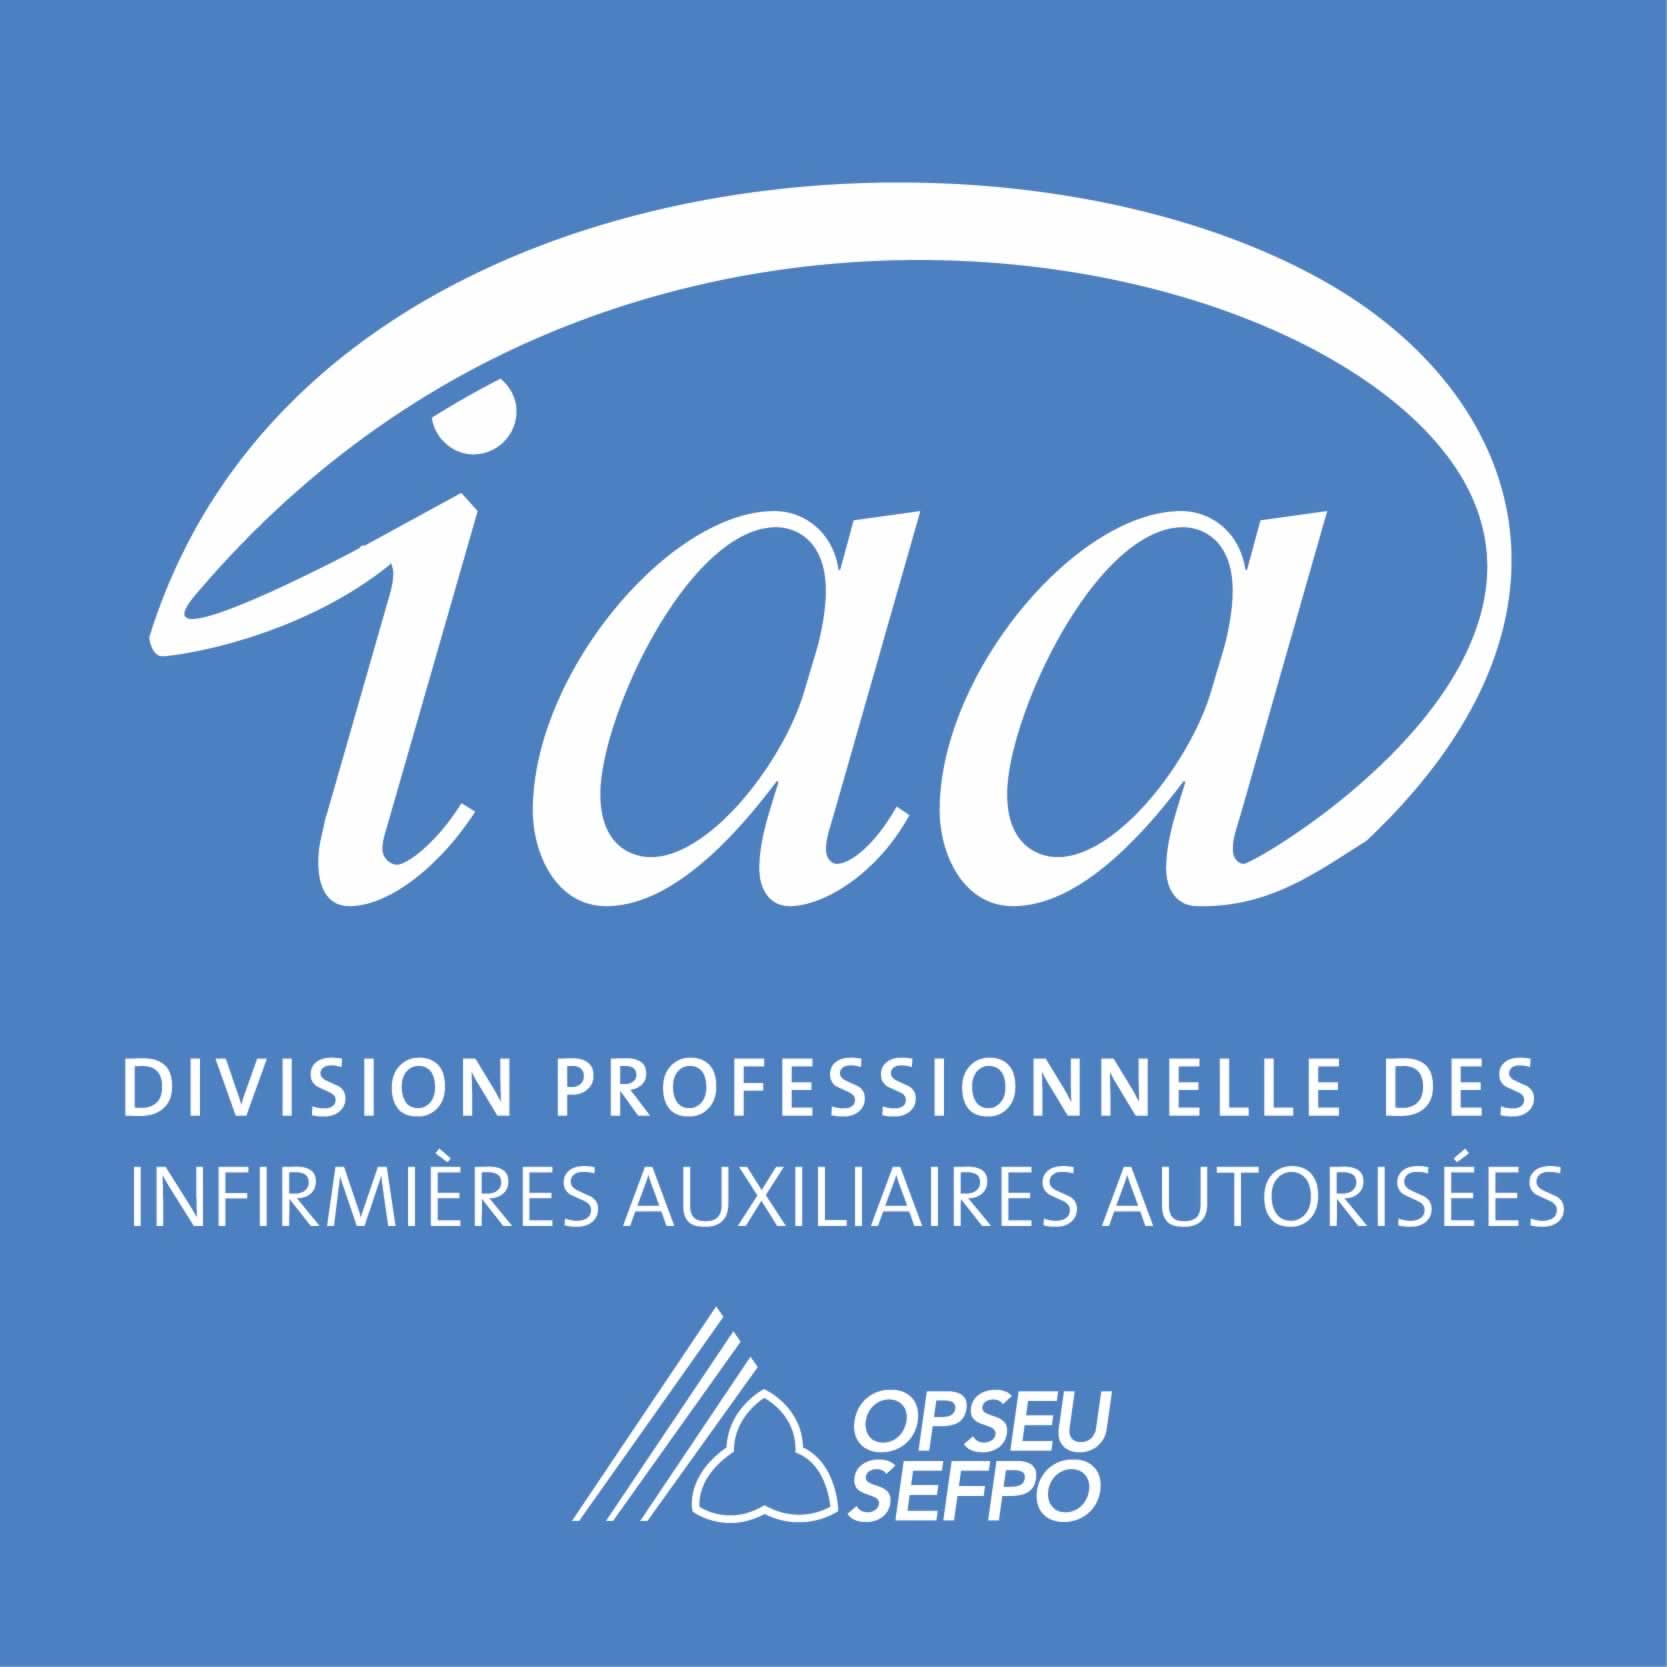 Division professionnelle des infirmières auxiliaires autorisées (IAA) SEFPO